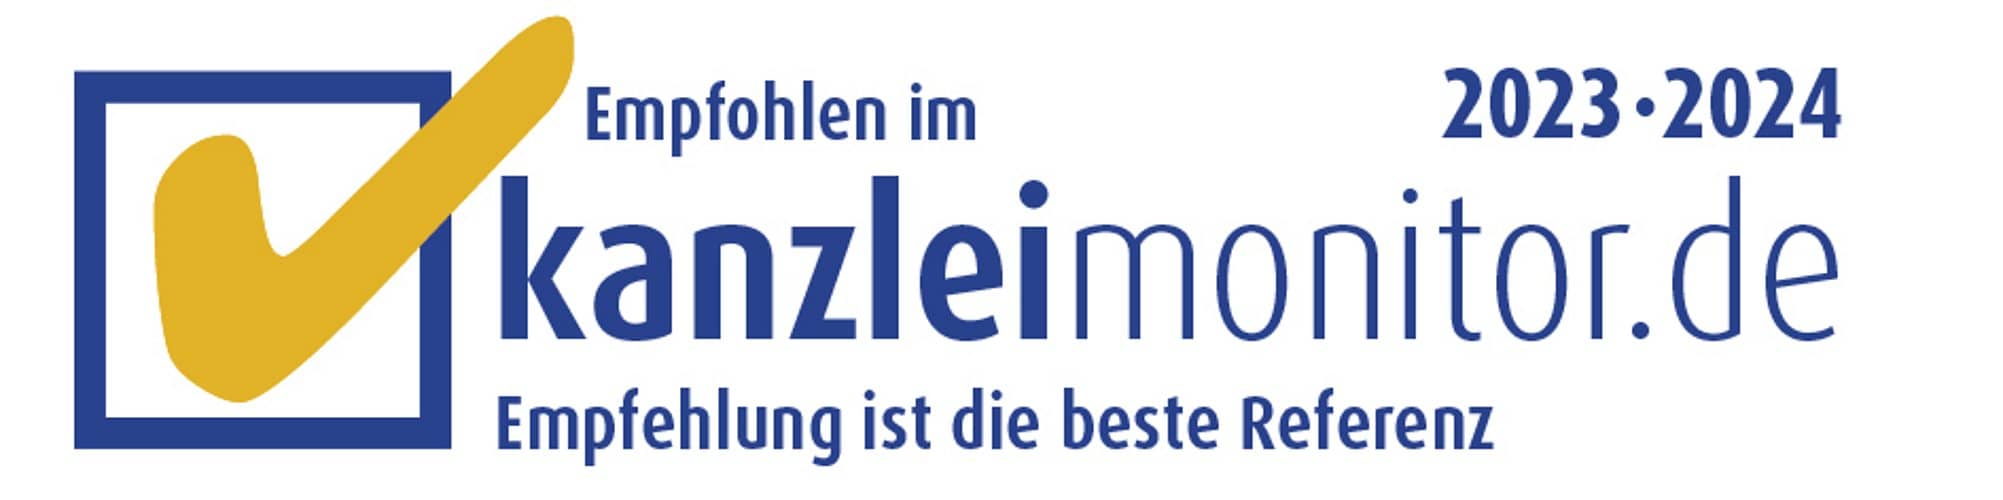 Auszeichnung Kanzleimonitor.de 2023/24 Kanzlei Pauly Rechtsanwälte Köln